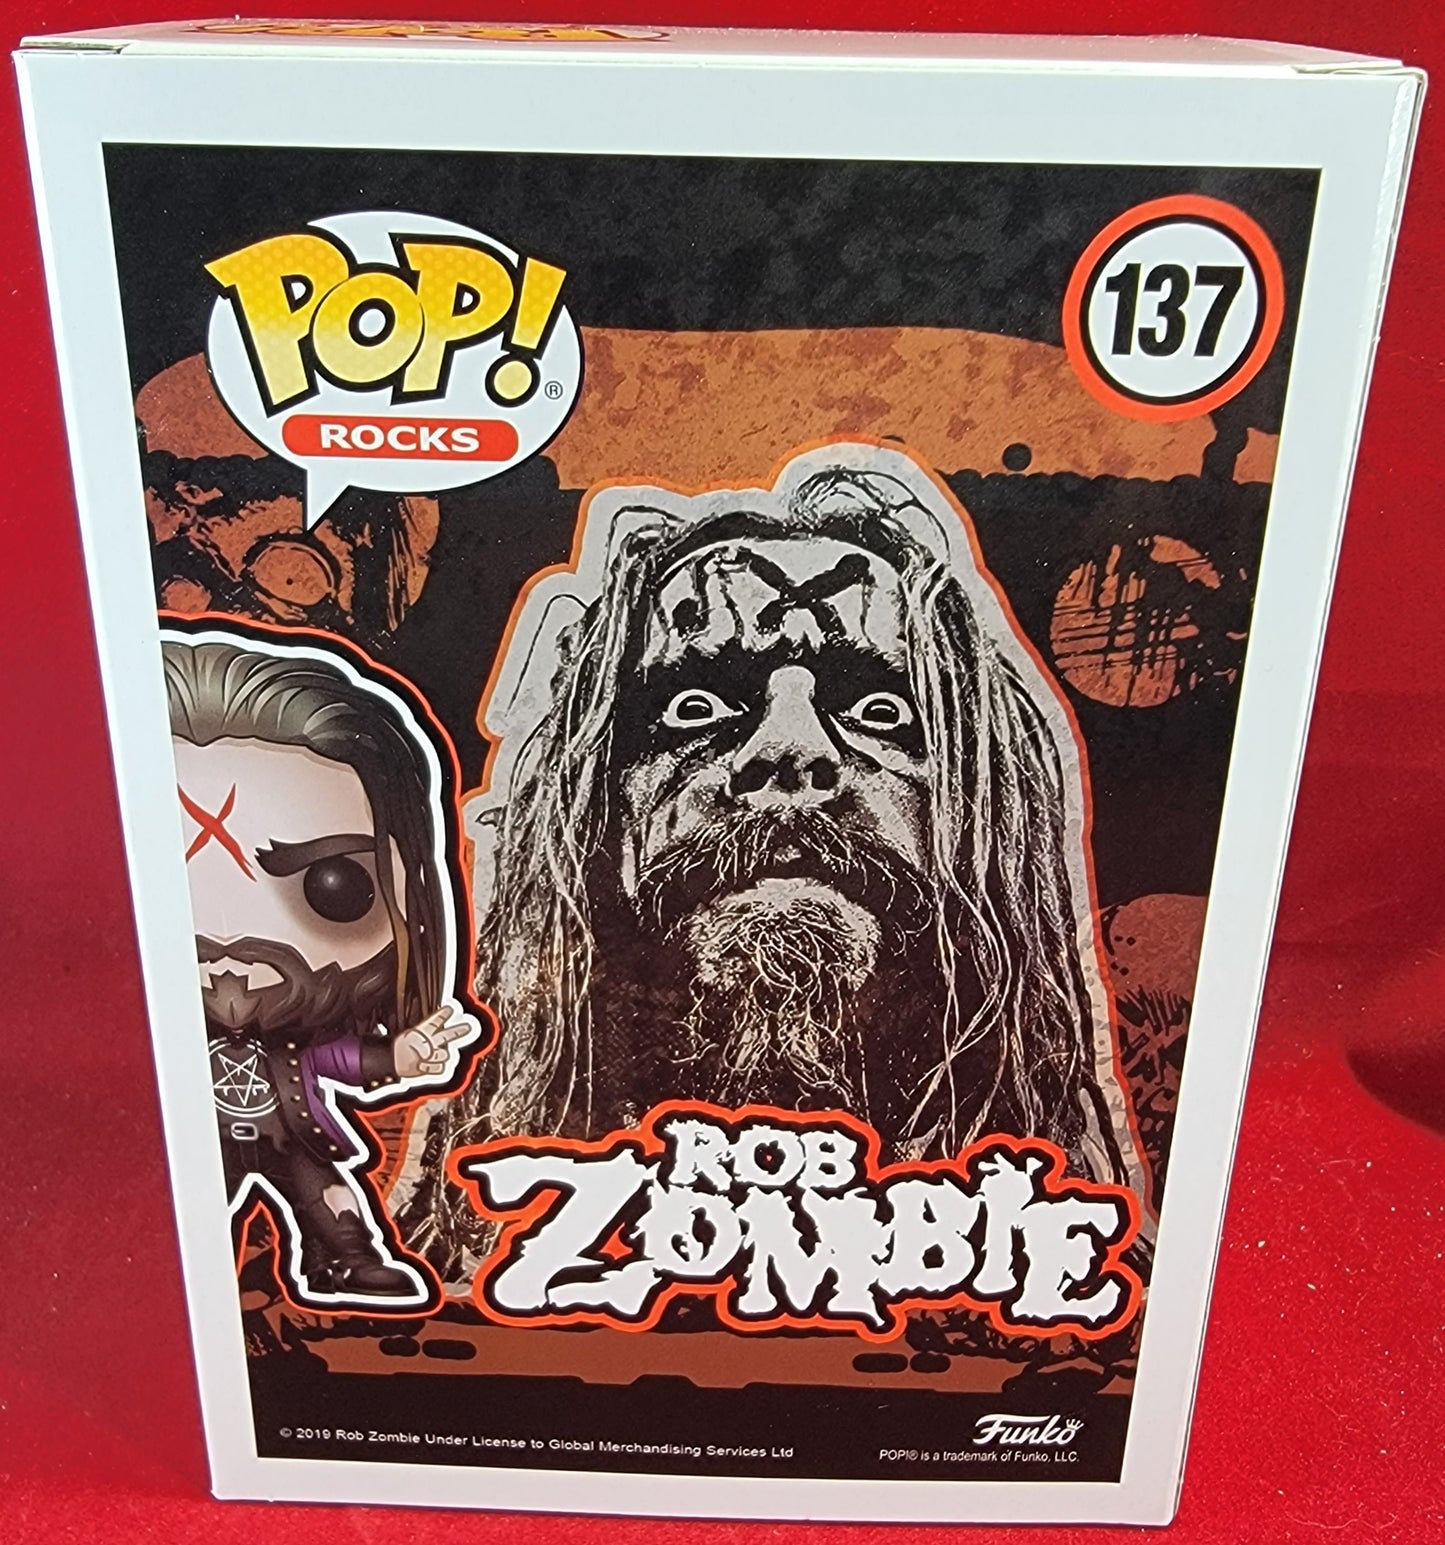 Rob zombie funko # 137 (nib)